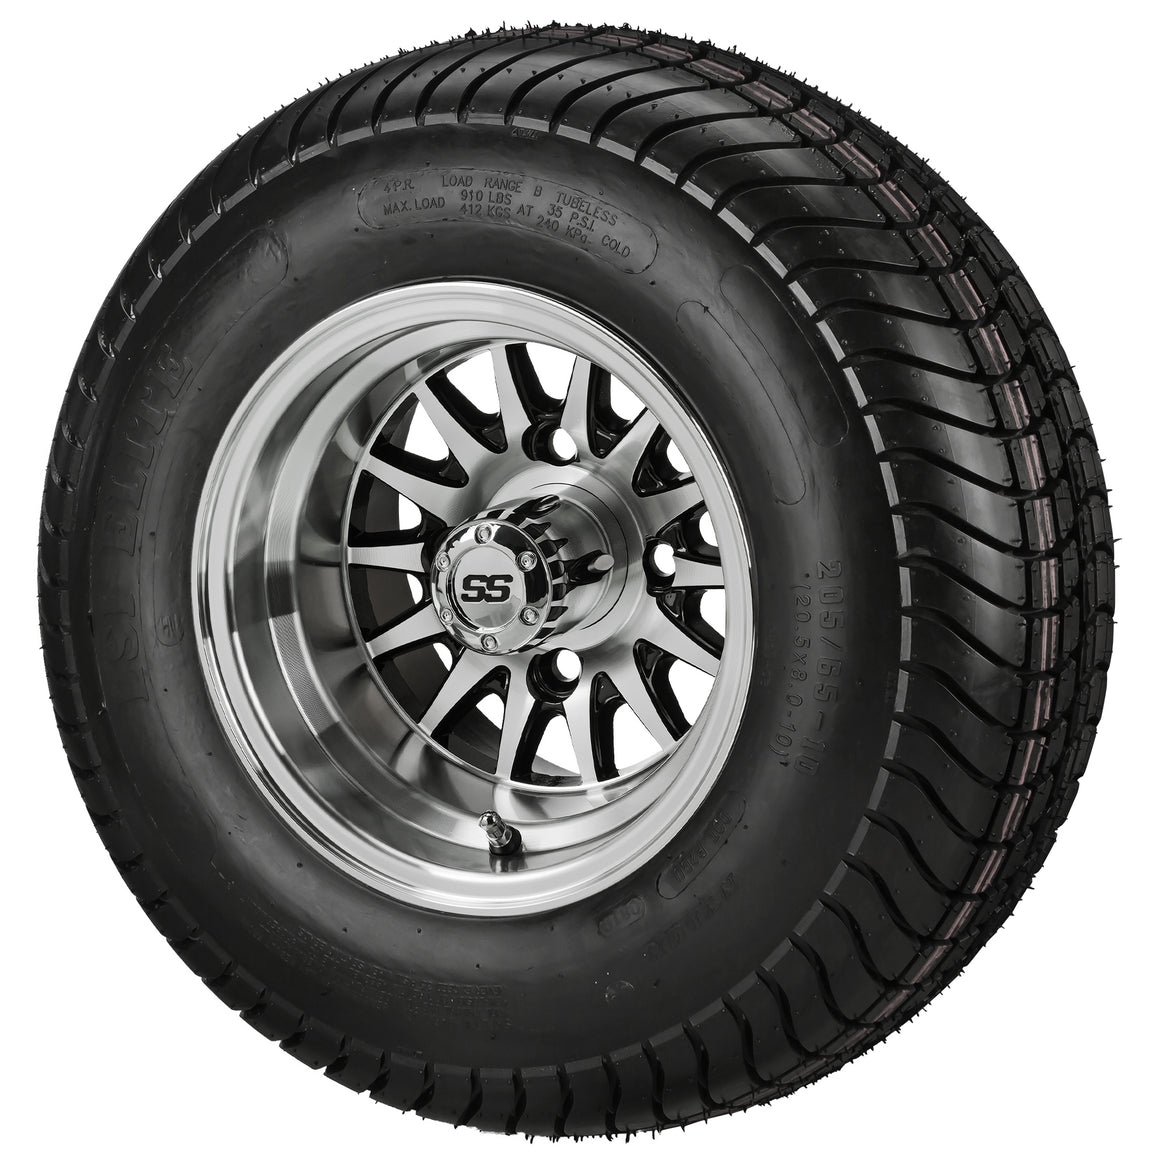 10" 14-Spoke Wheels on LSI Elite Tires Combo